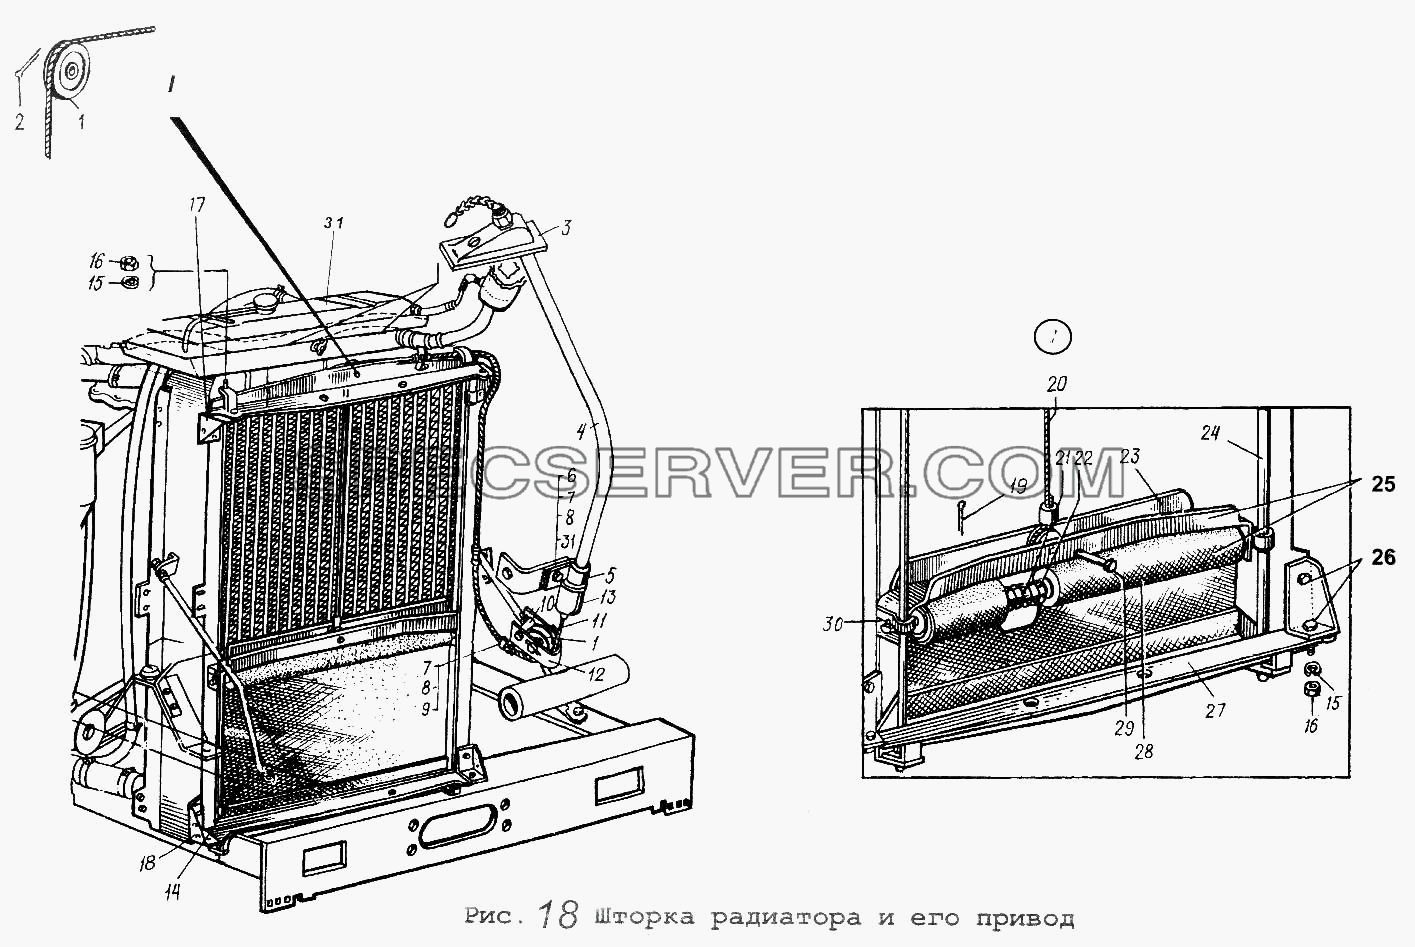 Шторка радиатора и его привод для МАЗ-5551 (список запасных частей)